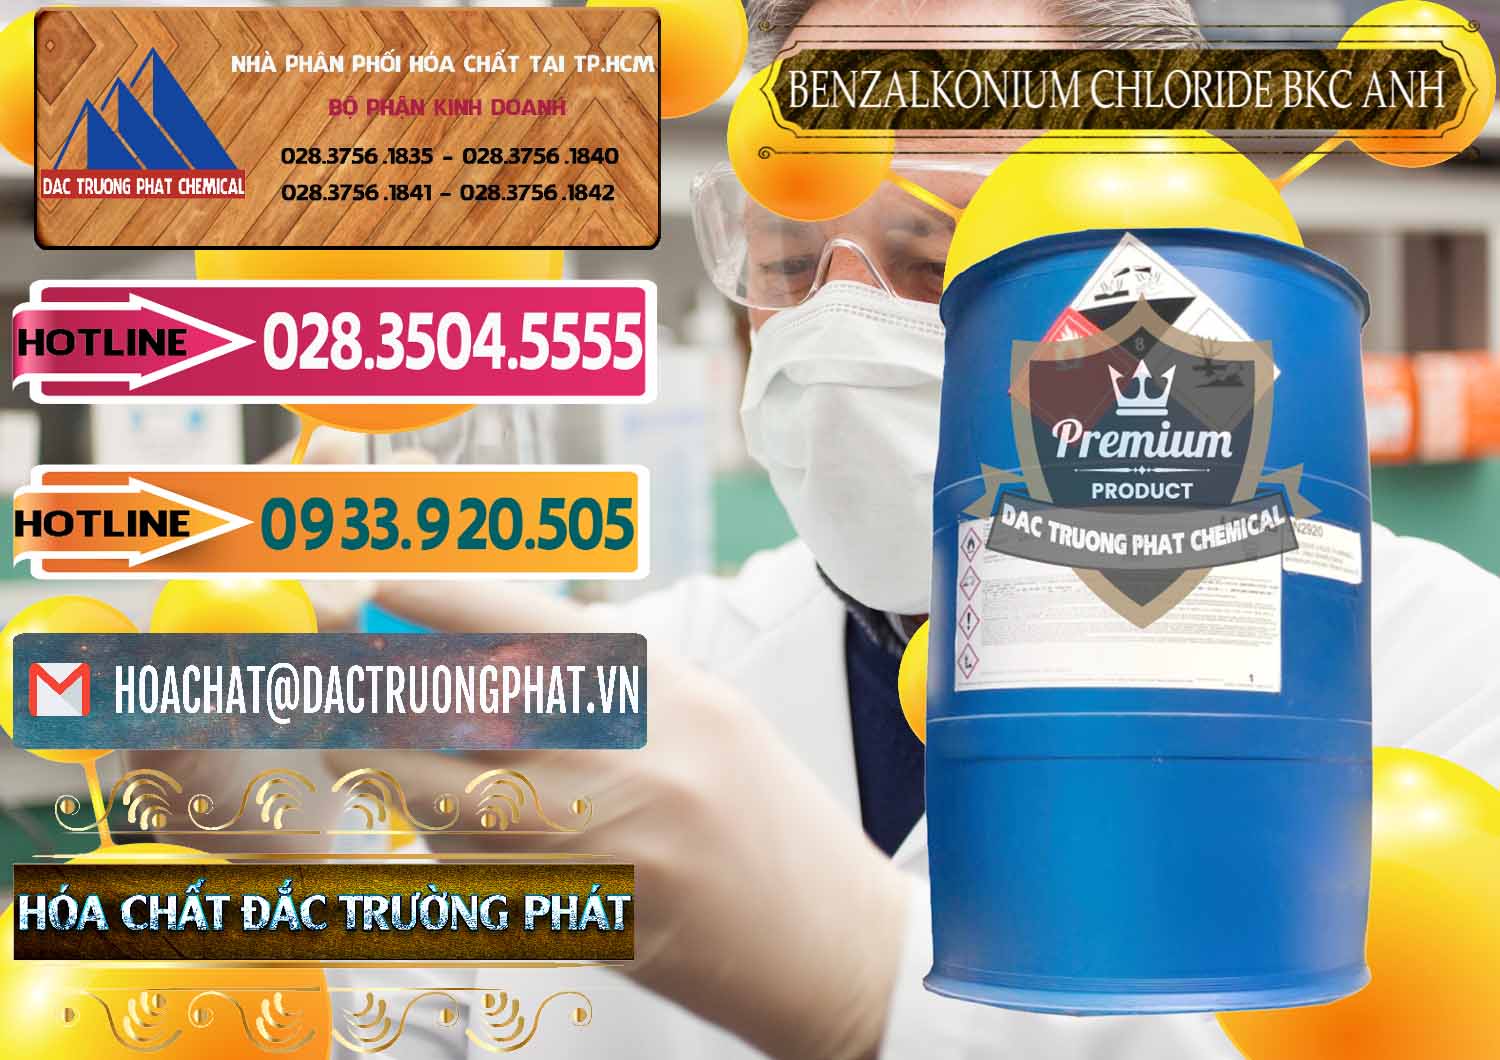 Chuyên cung cấp - bán BKC - Benzalkonium Chloride 80% Anh Quốc Uk Kingdoms - 0457 - Nhà phân phối - nhập khẩu hóa chất tại TP.HCM - dactruongphat.vn